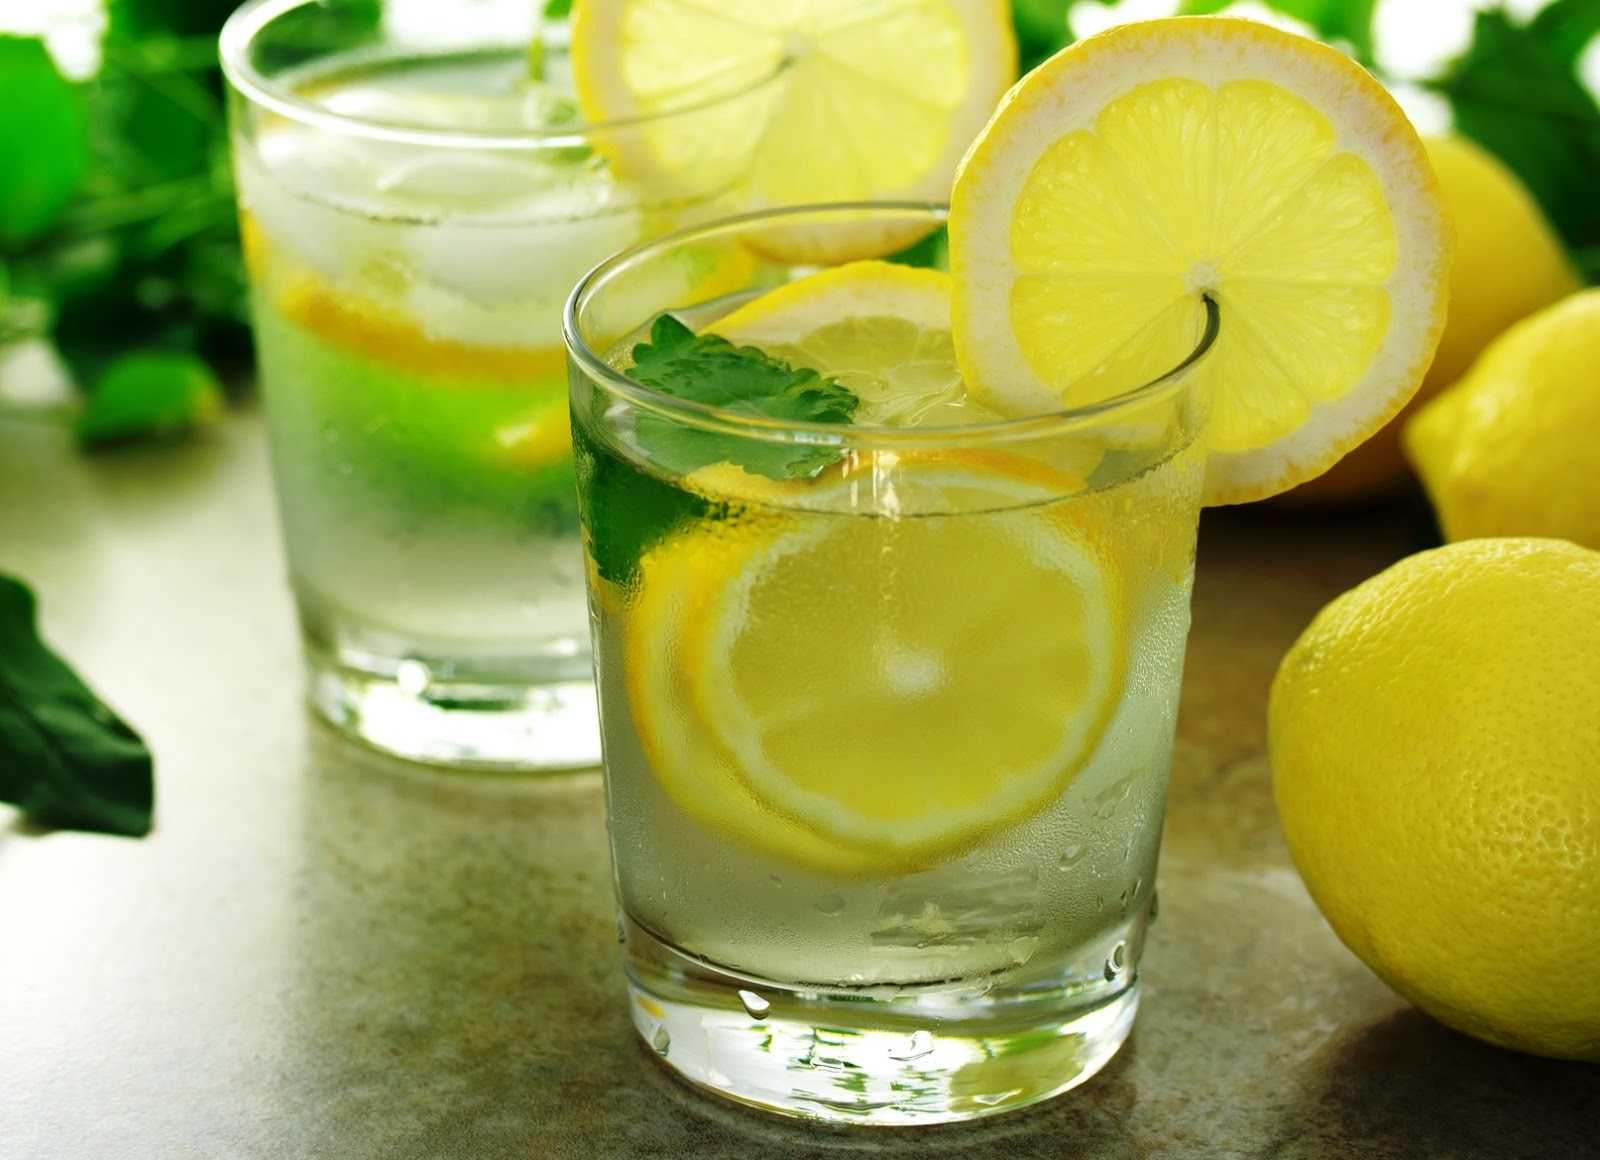 Сок лимона 1 2. Вода с лимоном. Лимон. Стакан с лимоном. Лимонный сок в стакане.